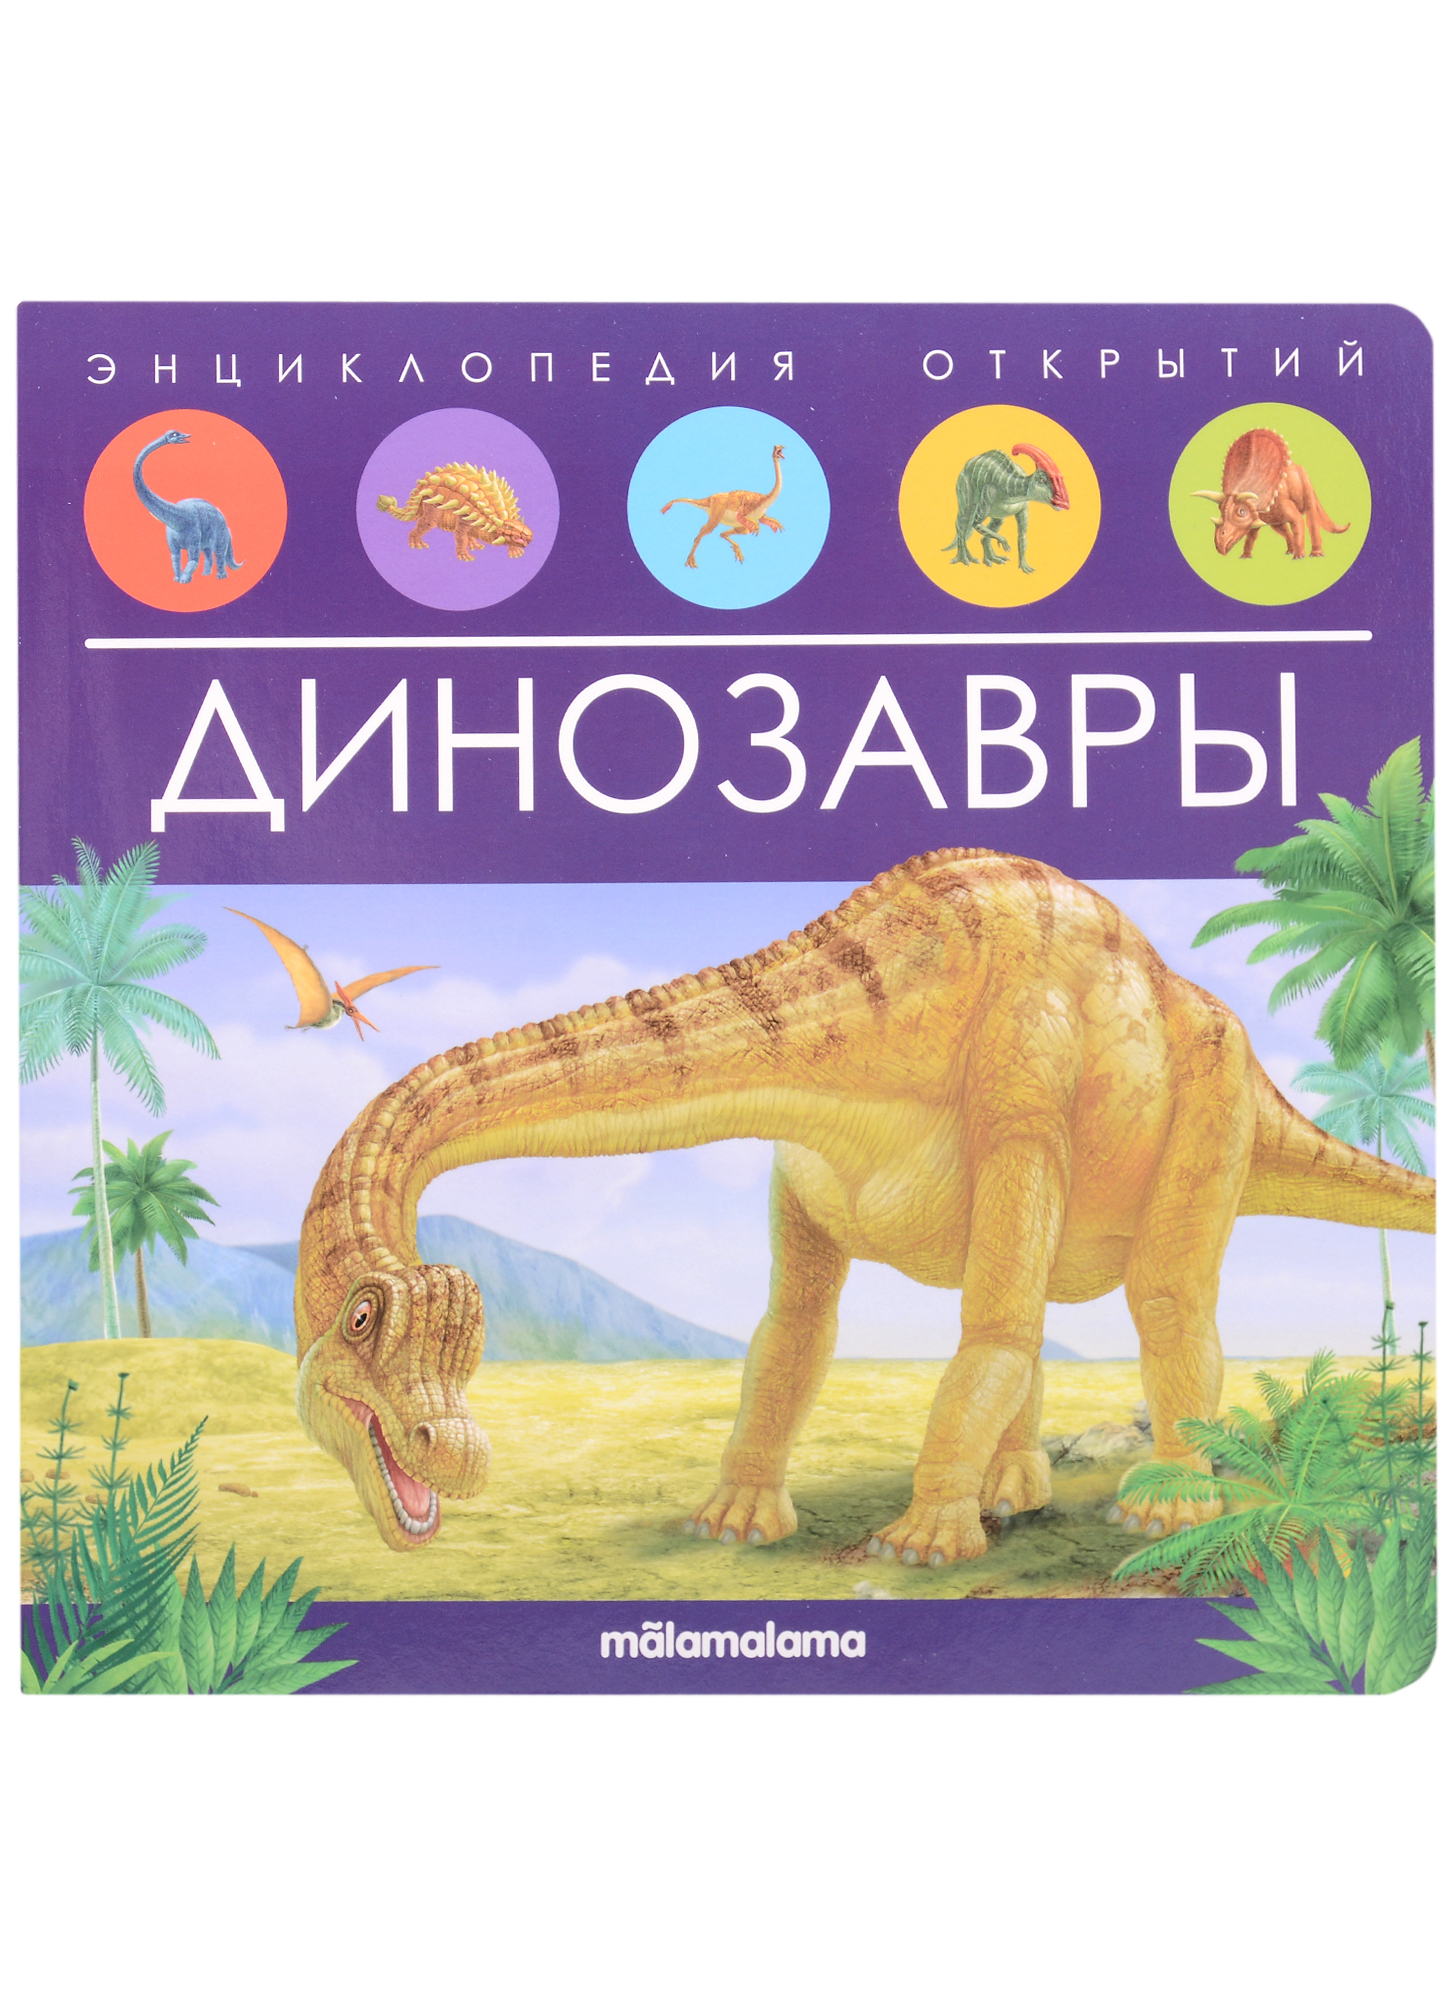 Динозавры. Книжка-панорамка энциклопедии malamalama энциклопедия открытий динозавры